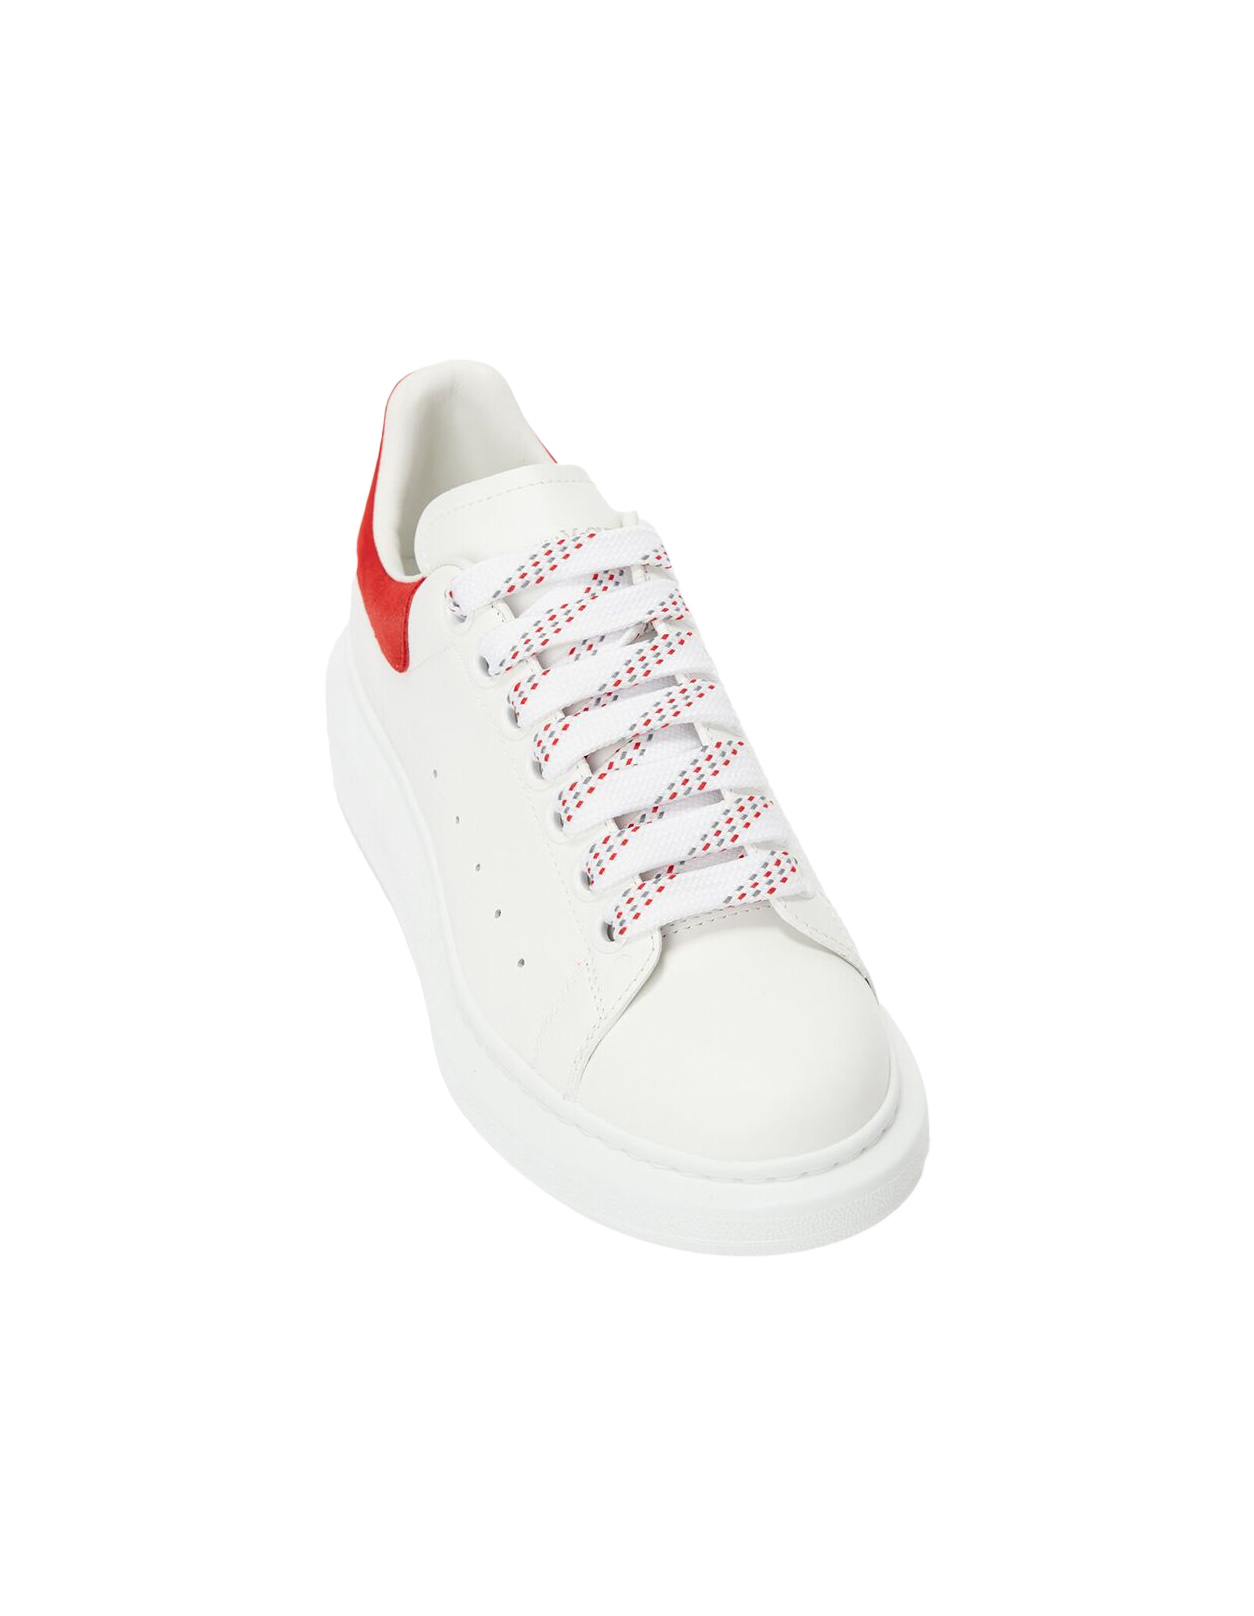 Alexander McQueen Heel Tab Wedge Sole Sneaker White & Lust Red